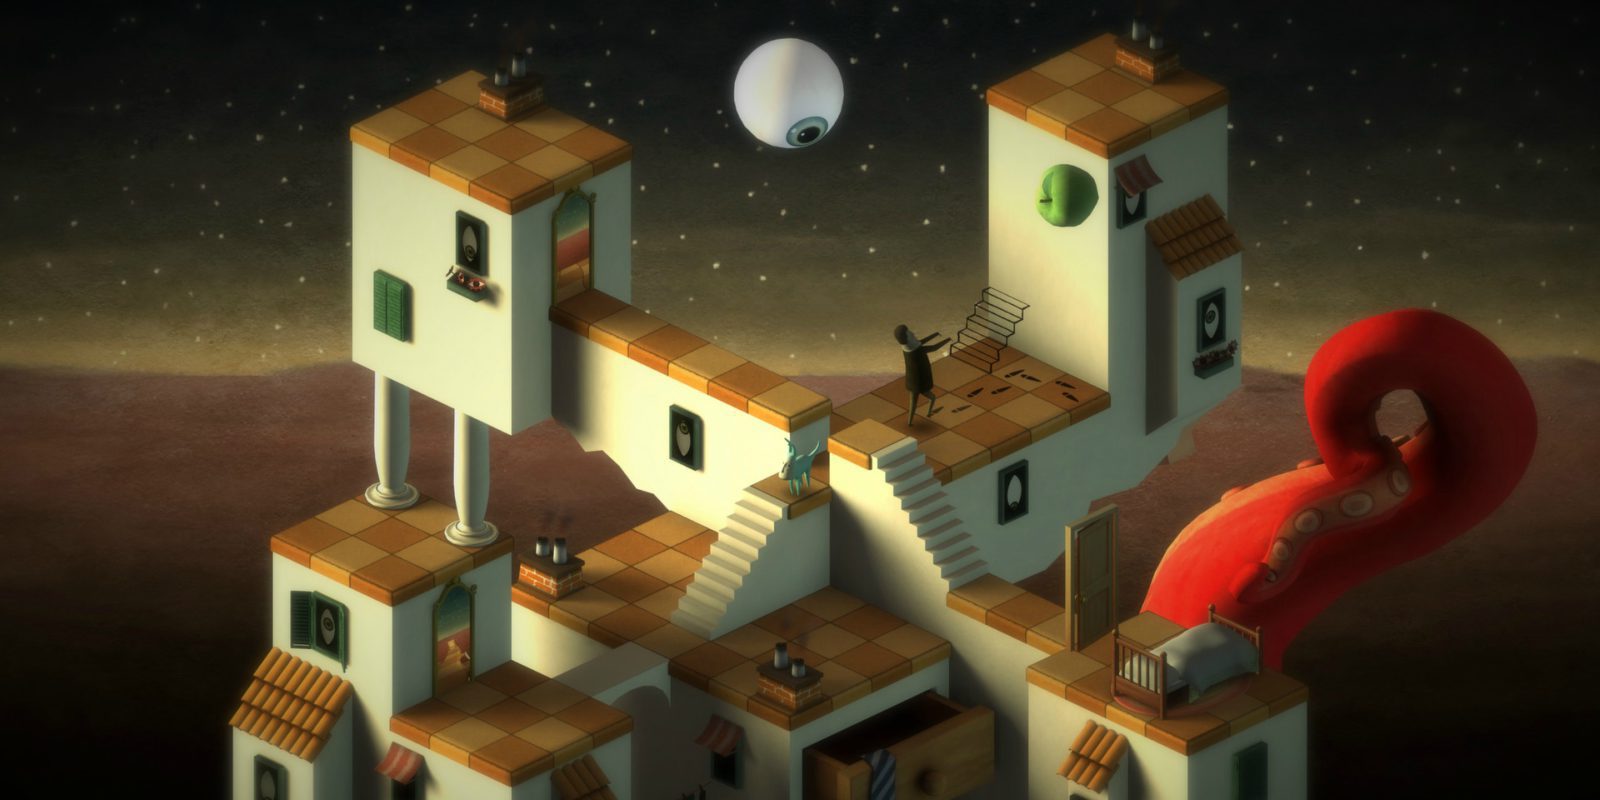 Bedtime Digital regala 'Back to Bed' en Steam para celebrar el lanzamiento de 'Figment'